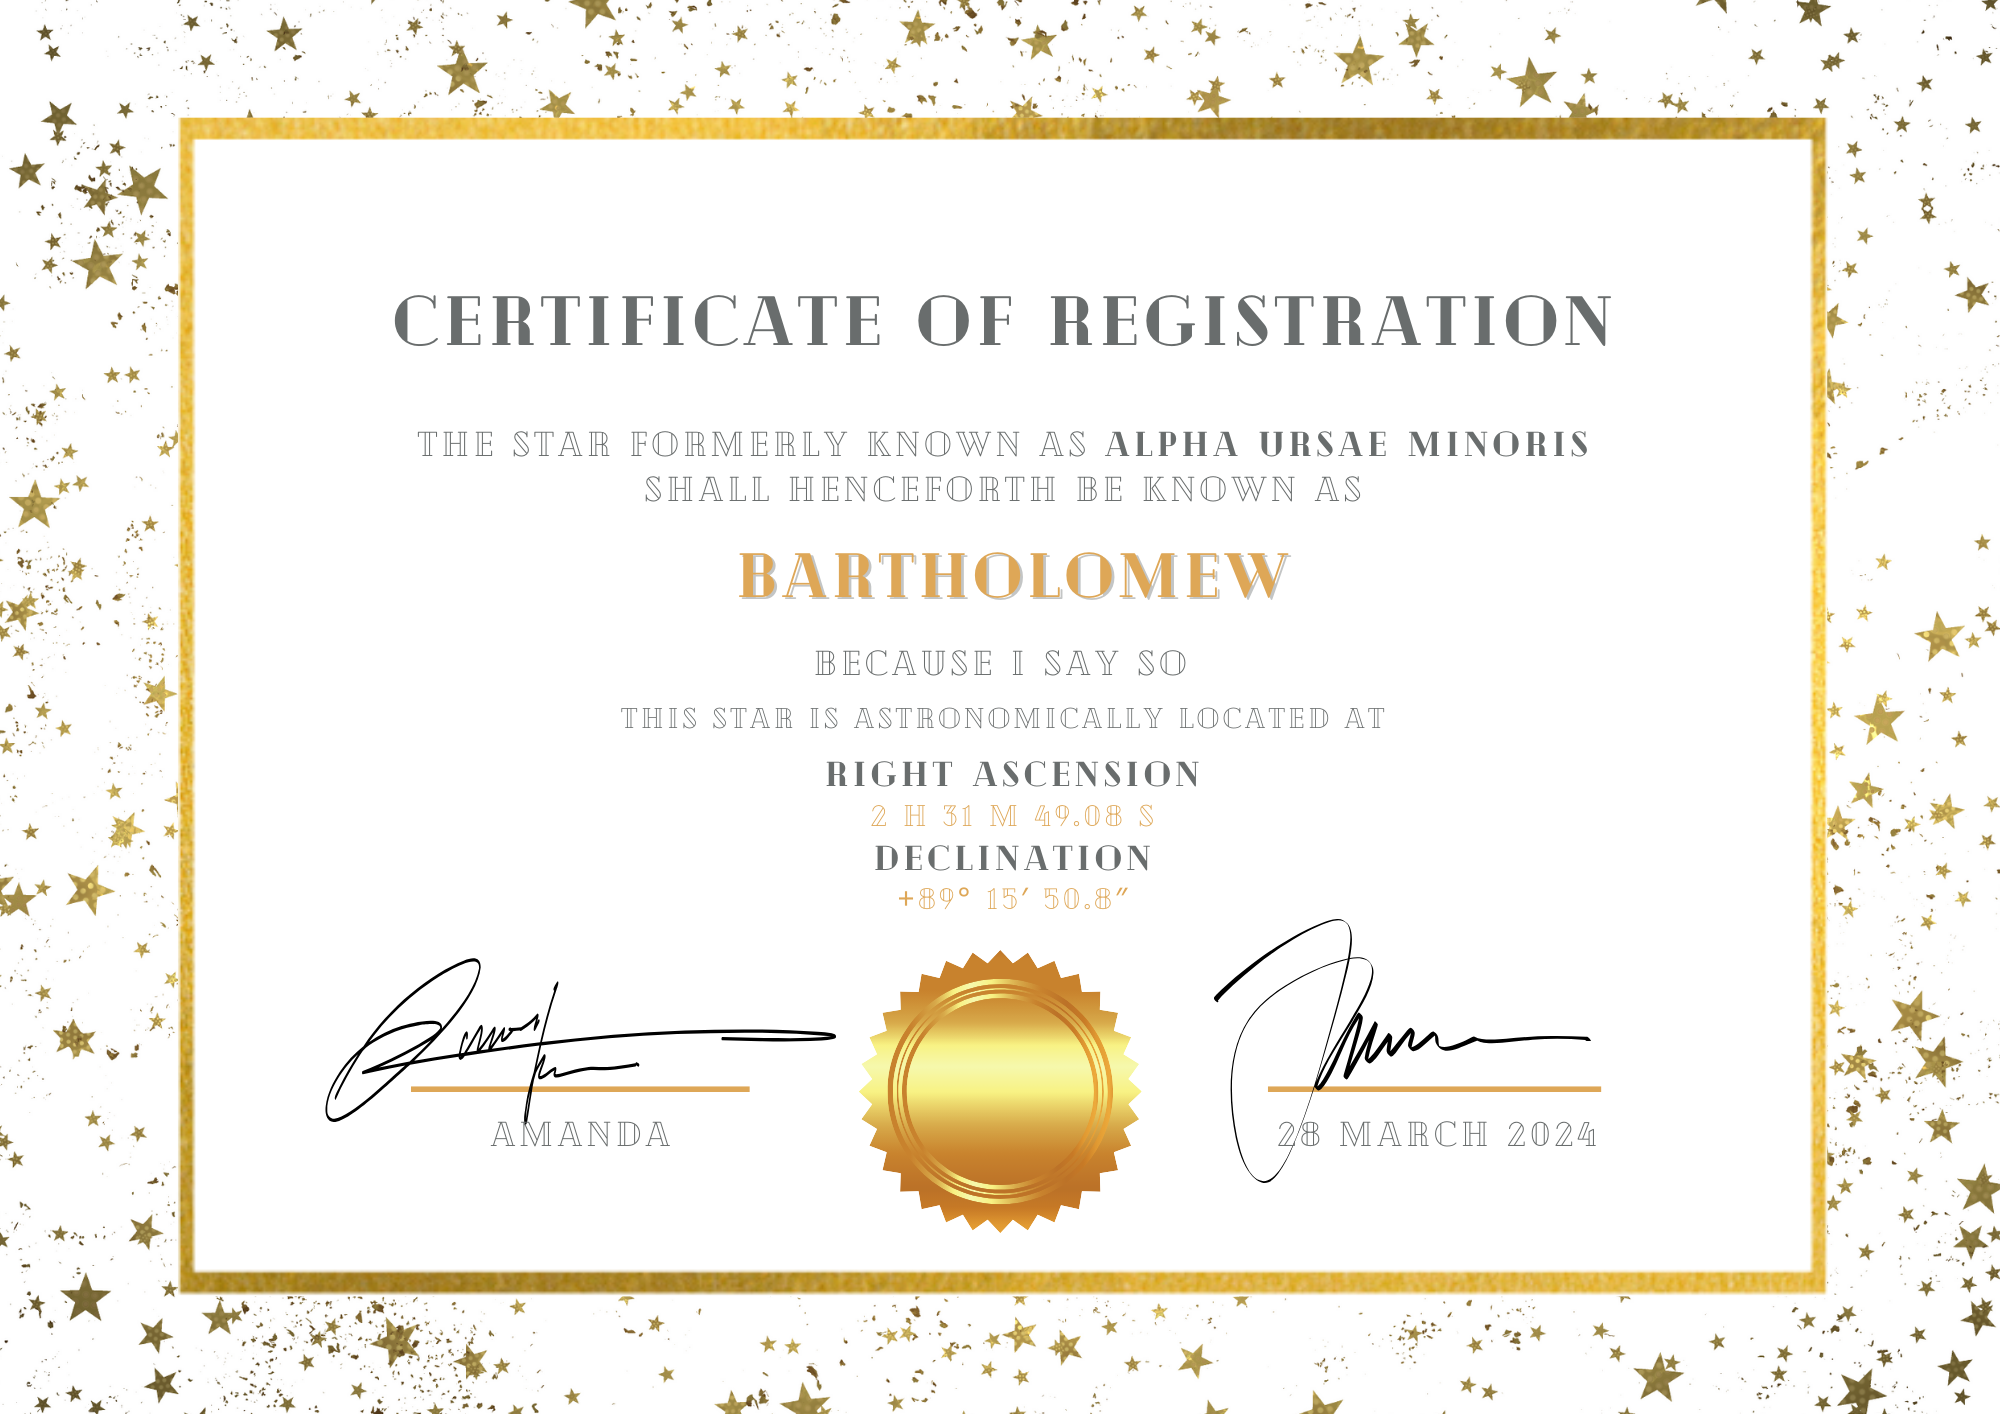 Un certificat d'enregistrement créé dans Canva qui renomme l'étoile polaire en « Bartholomew ».